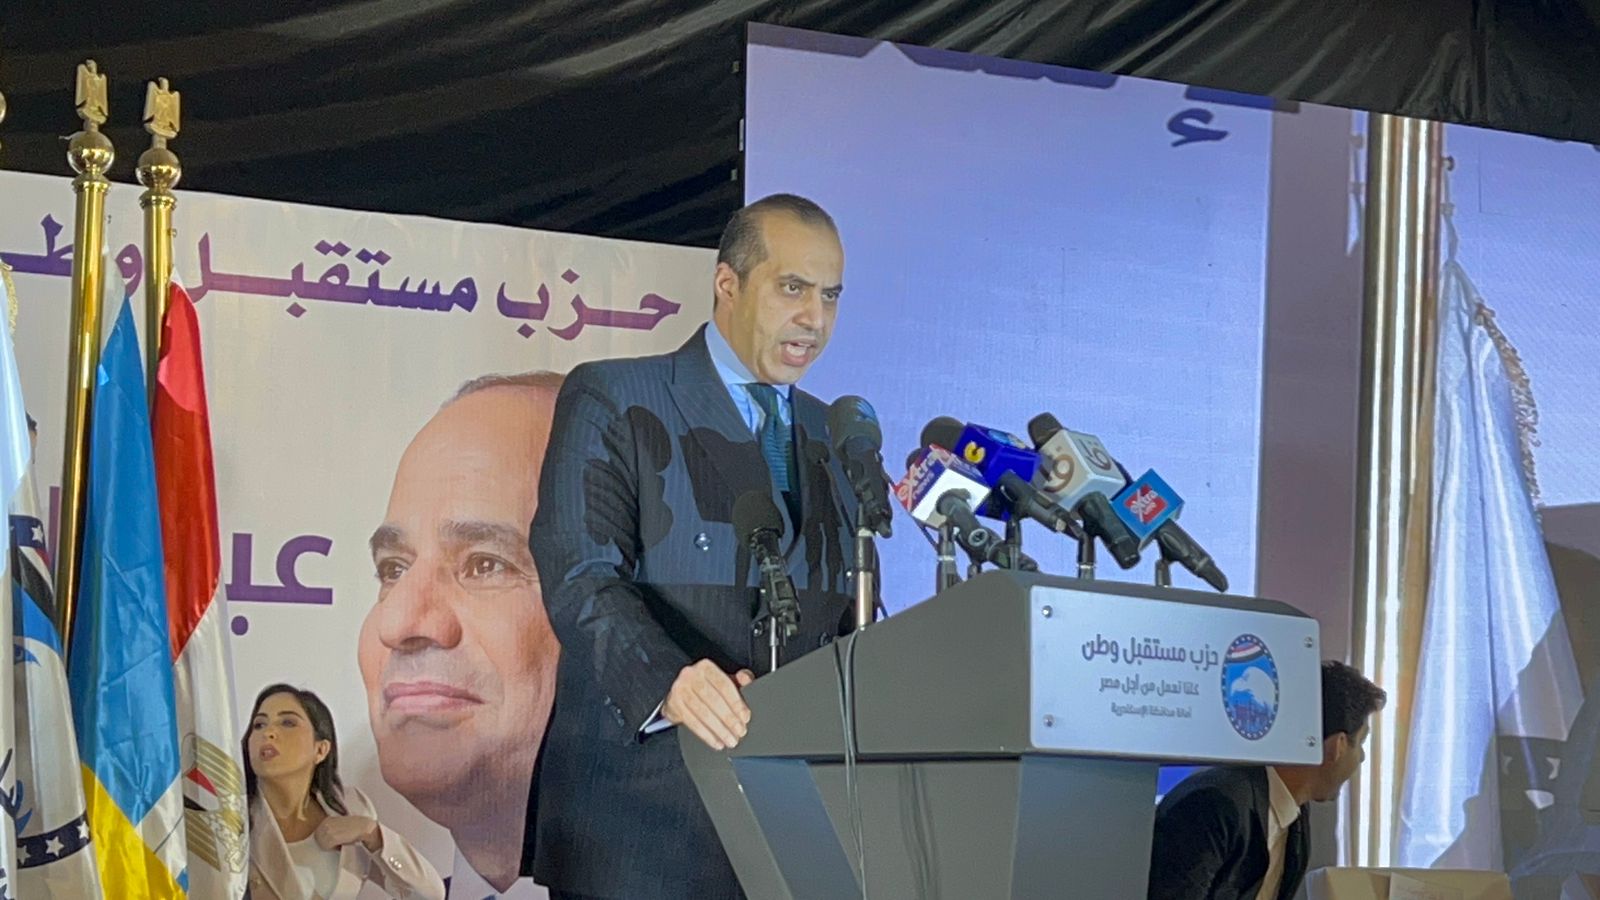 رئيس الحملة الرسمية للمرشح الرئاسي عبد الفتاح السيسي ضيف برنامج  كلمة أخيرة  مساء اليوم الثلاثاء